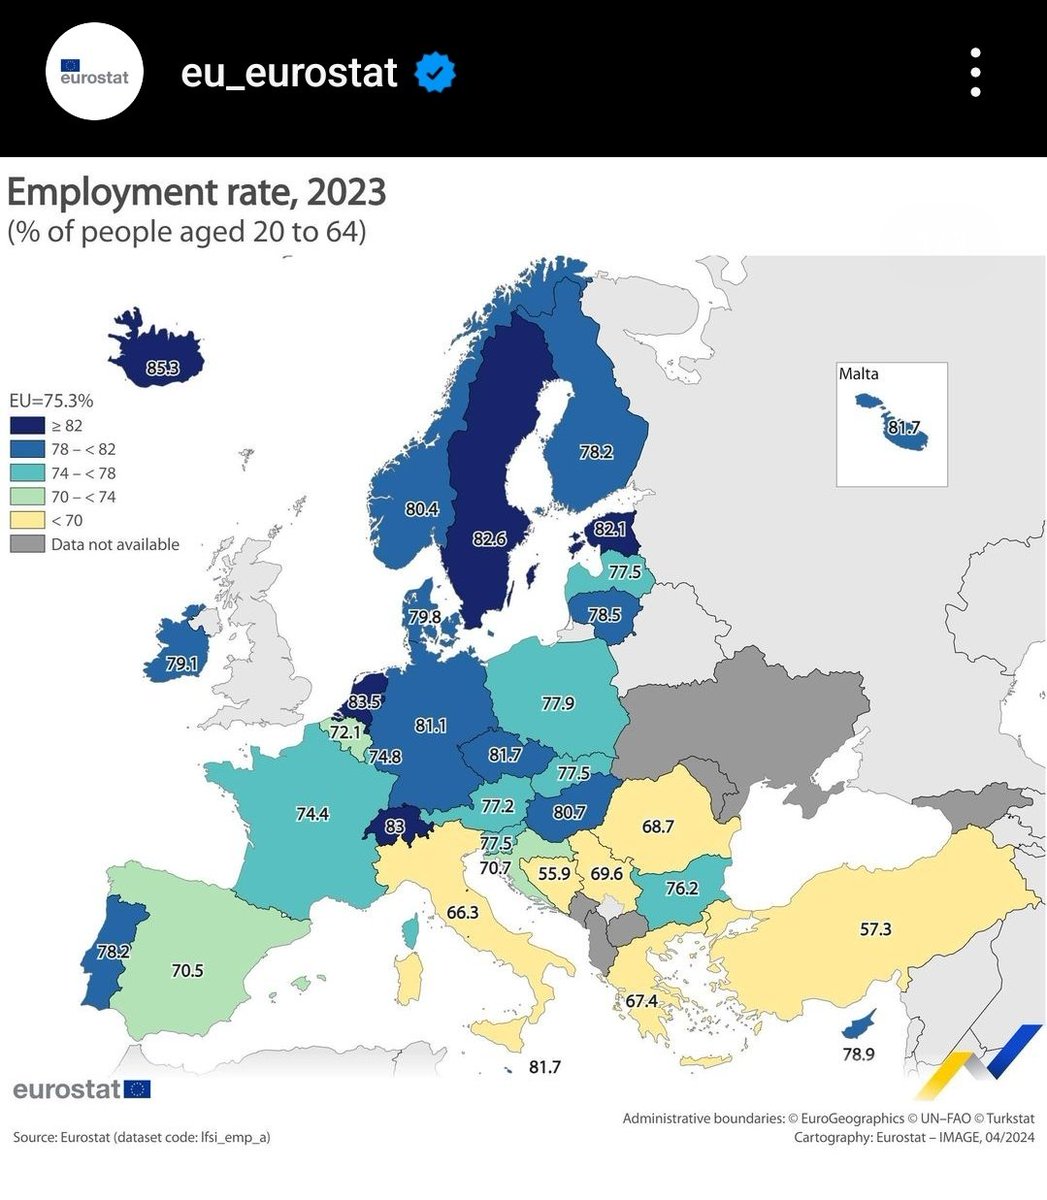 1/3 Ελληνίδες ή Έλληνες σε παραγωγική ηλικία, χωρίς πρόβλημα υγείας, που θα μπορούσαν να εργάζονται ΔΕΝ εργάζονται. 
Οι λόγοι πολλοί κ διαχρονικοί:
- αναντιστοιχία δεξιοτήτων κ αναγκών αγοράς εργασίας 
- επιδοματοποιηση, που δρα αποτρεπτικά στην ένταξη στην εργασία
- έλλειψη >